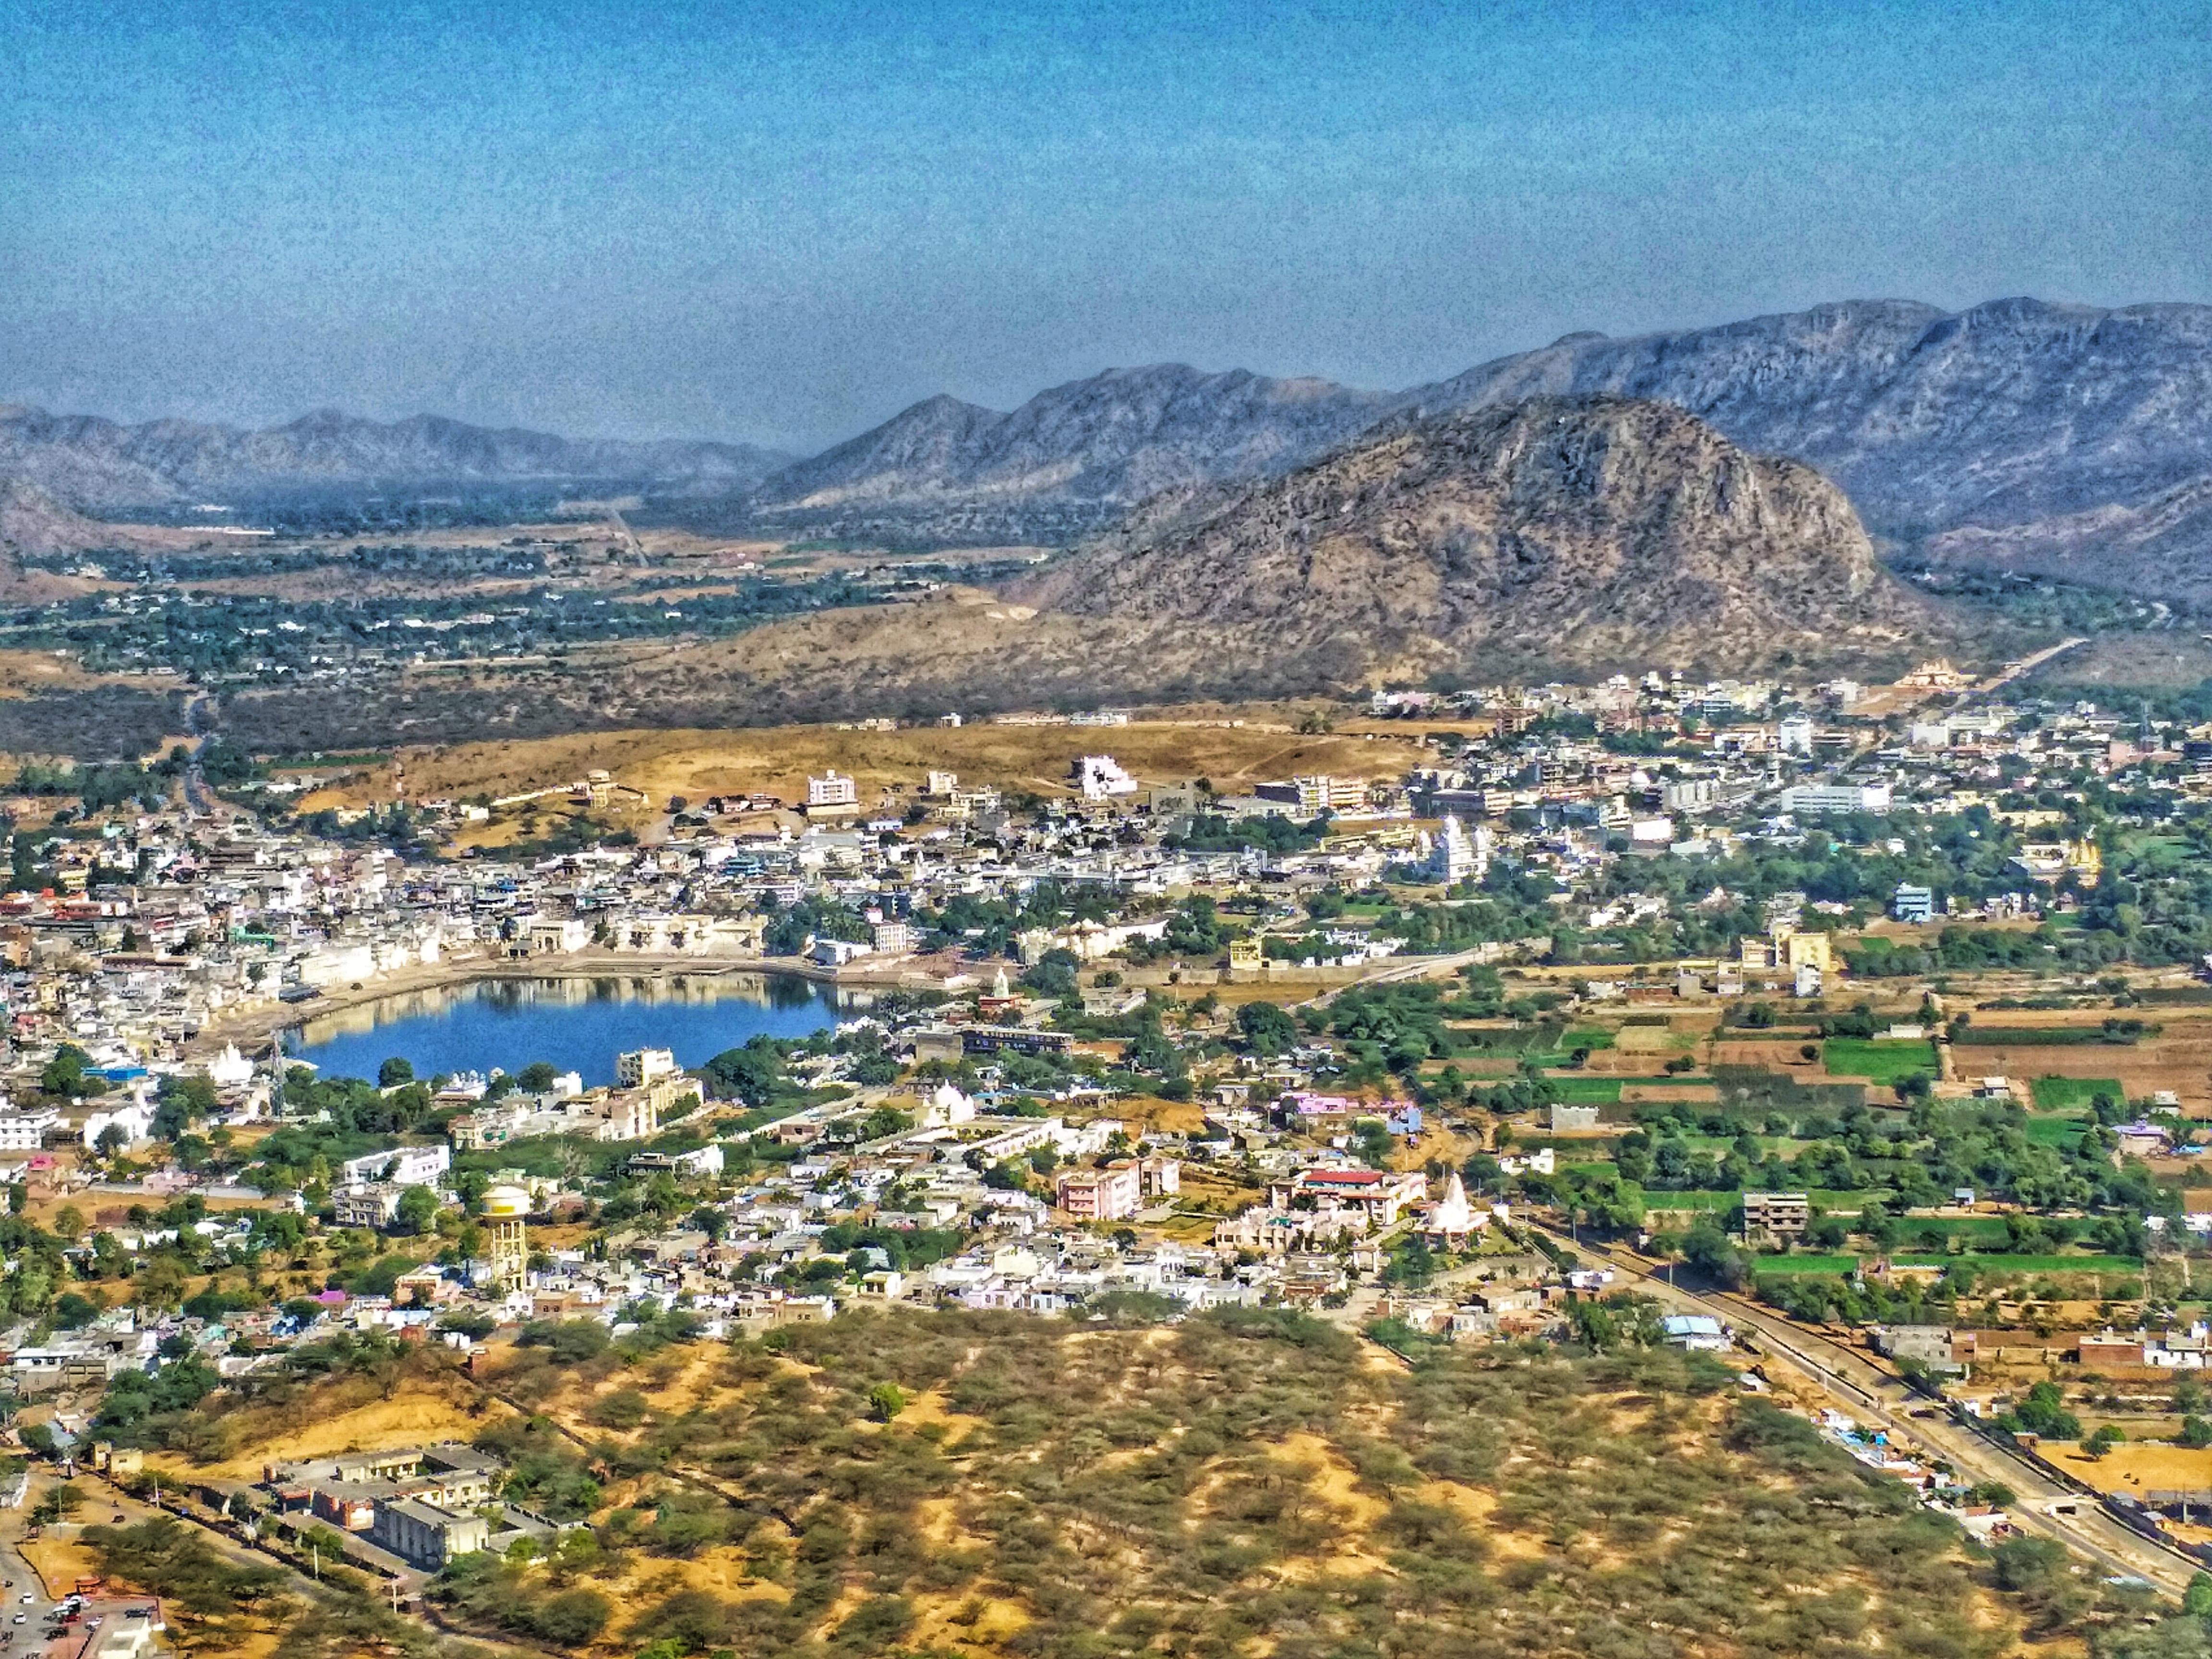 Aerial View of Pushkar